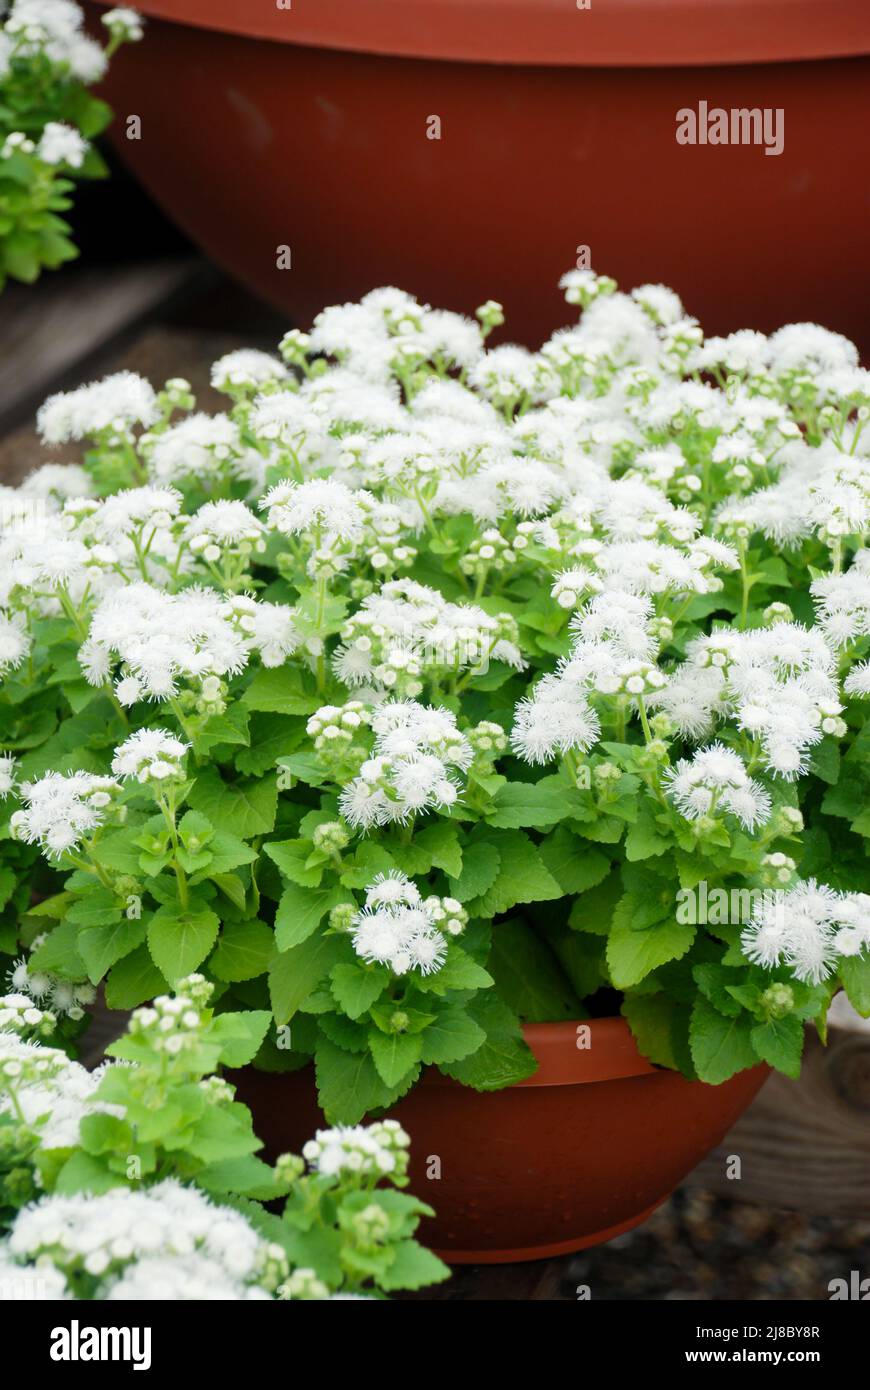 Ageratum, white ageratum, white pot plants in the black tray Stock Photo